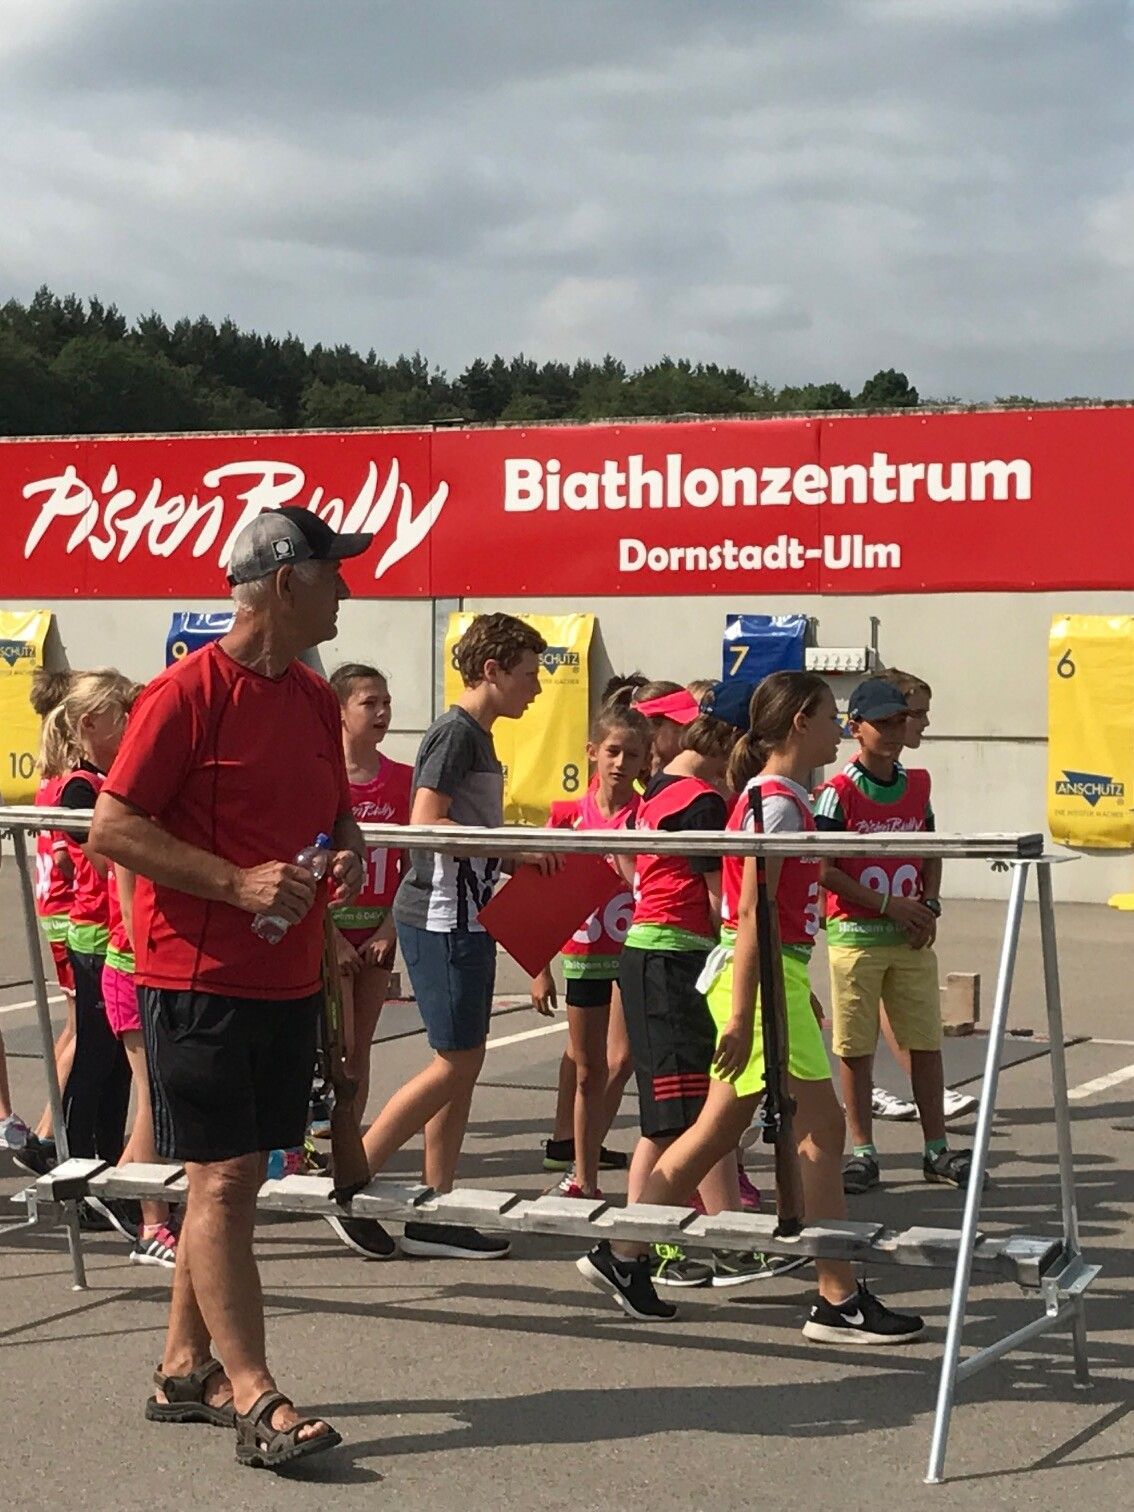 Sponsor of PistenBully Biathlon Center